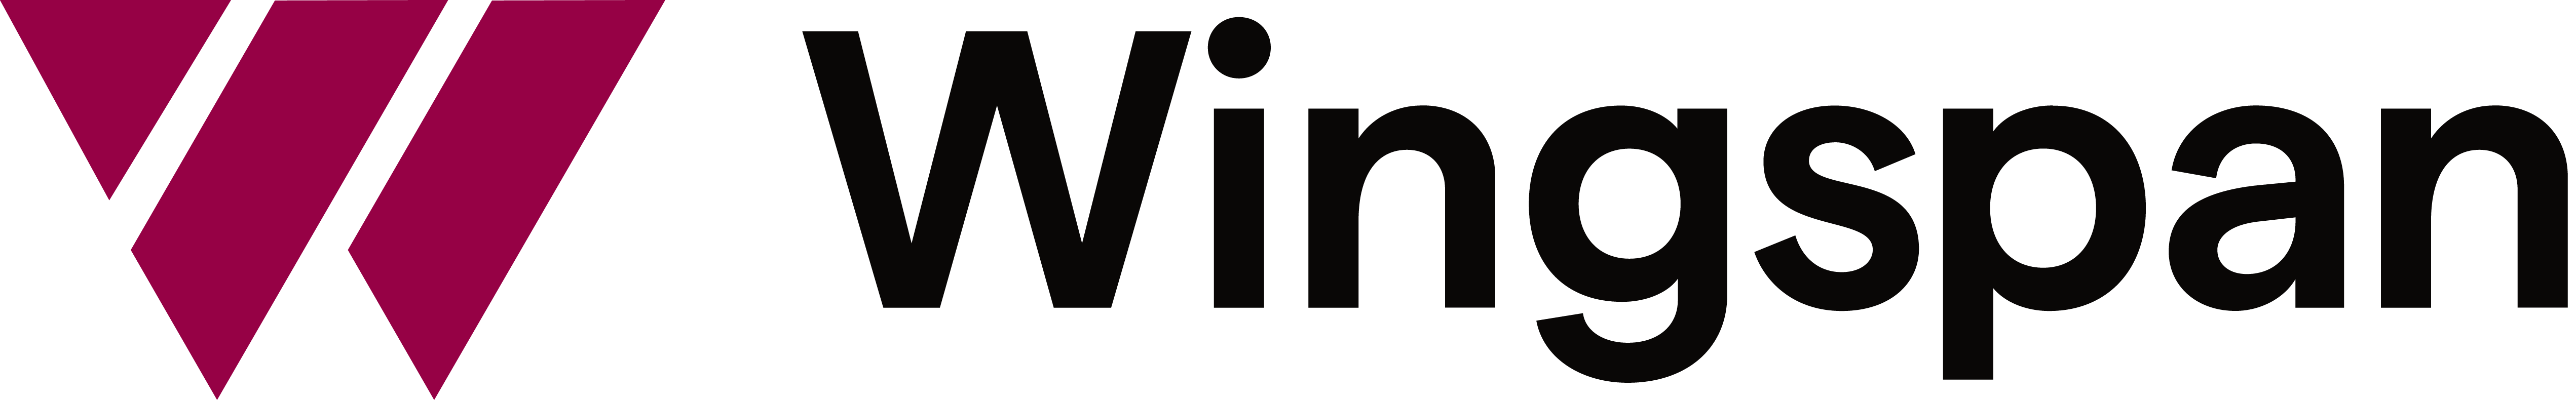 logos-customer-wingspan